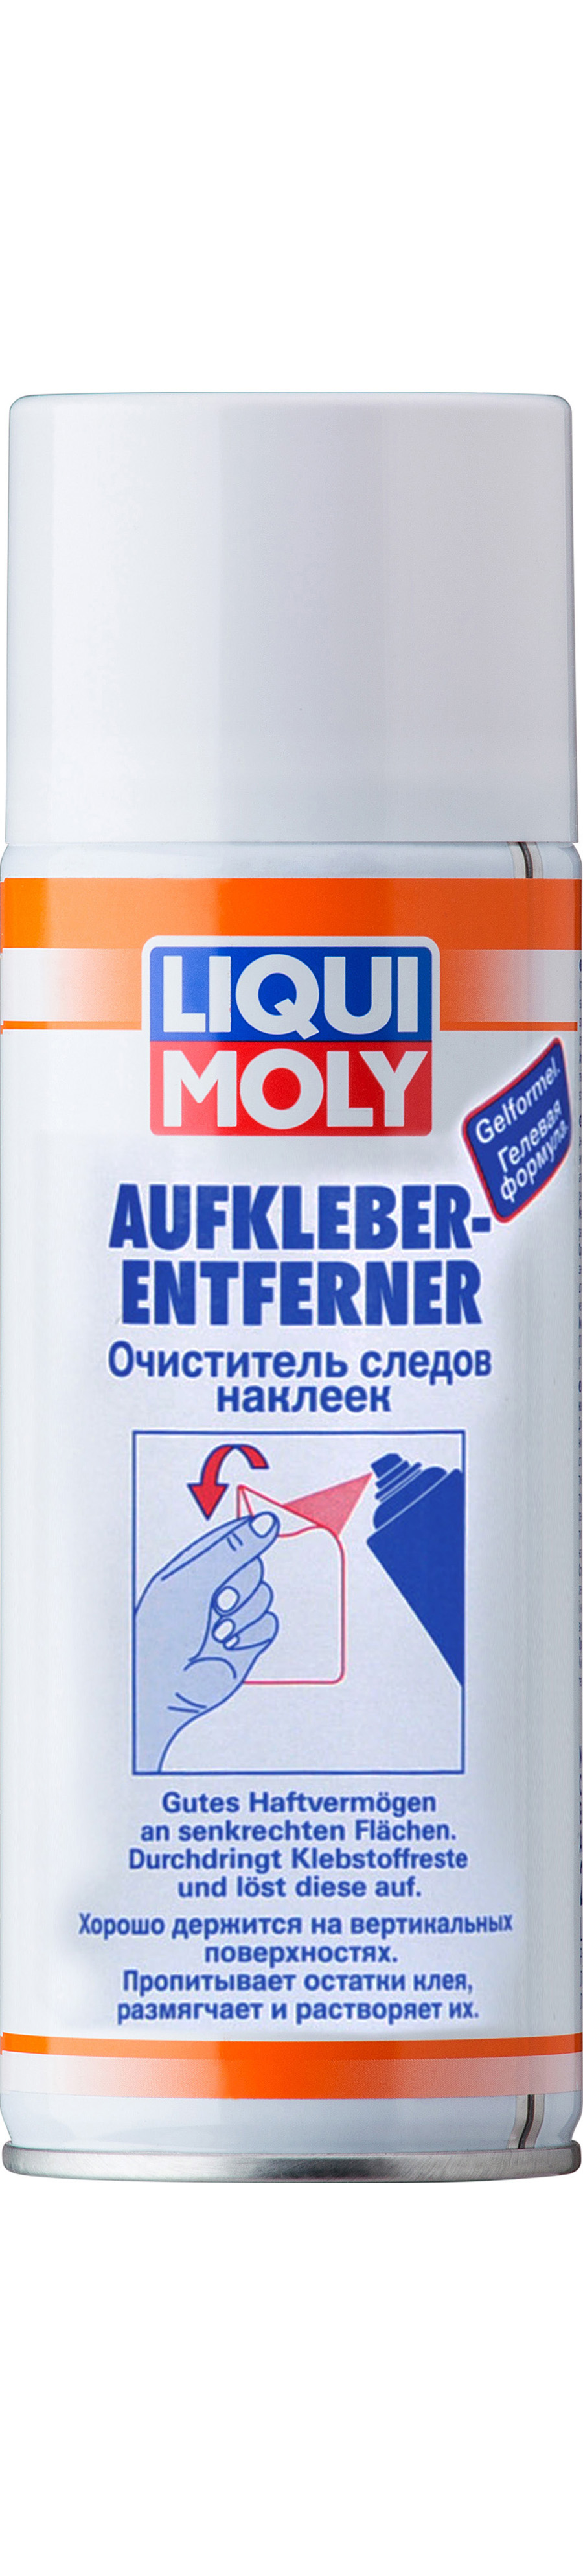 Очиститель следов наклеек LIQUI MOLY Aufkleberentferner (0,4 литра)